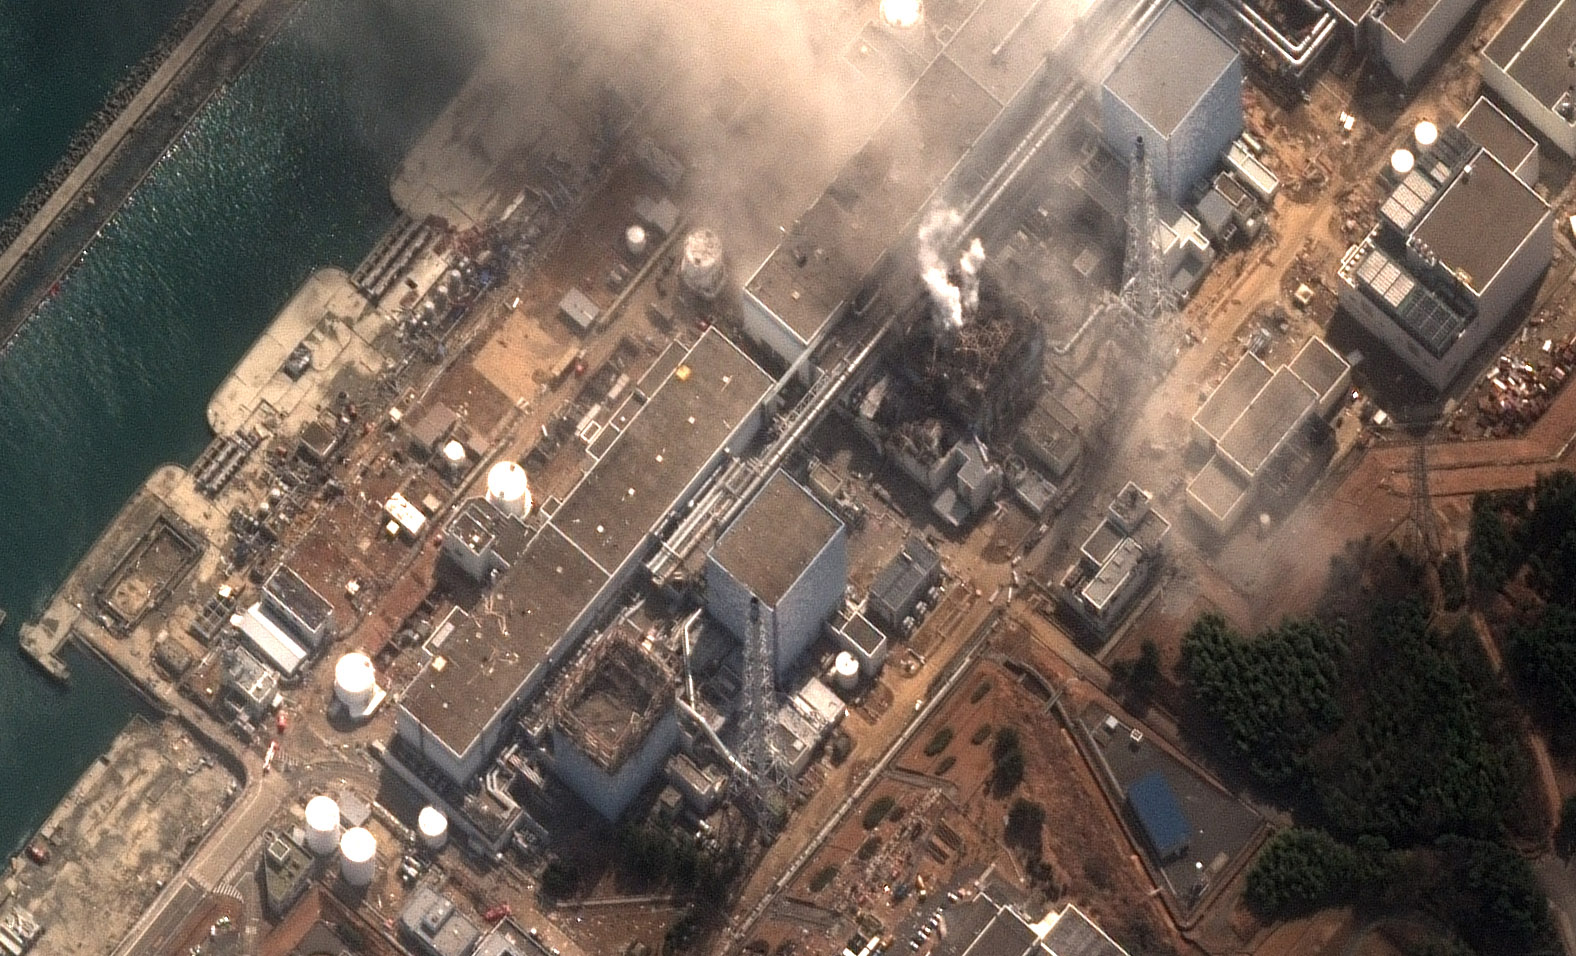 fukushima_after_explosions.jpg